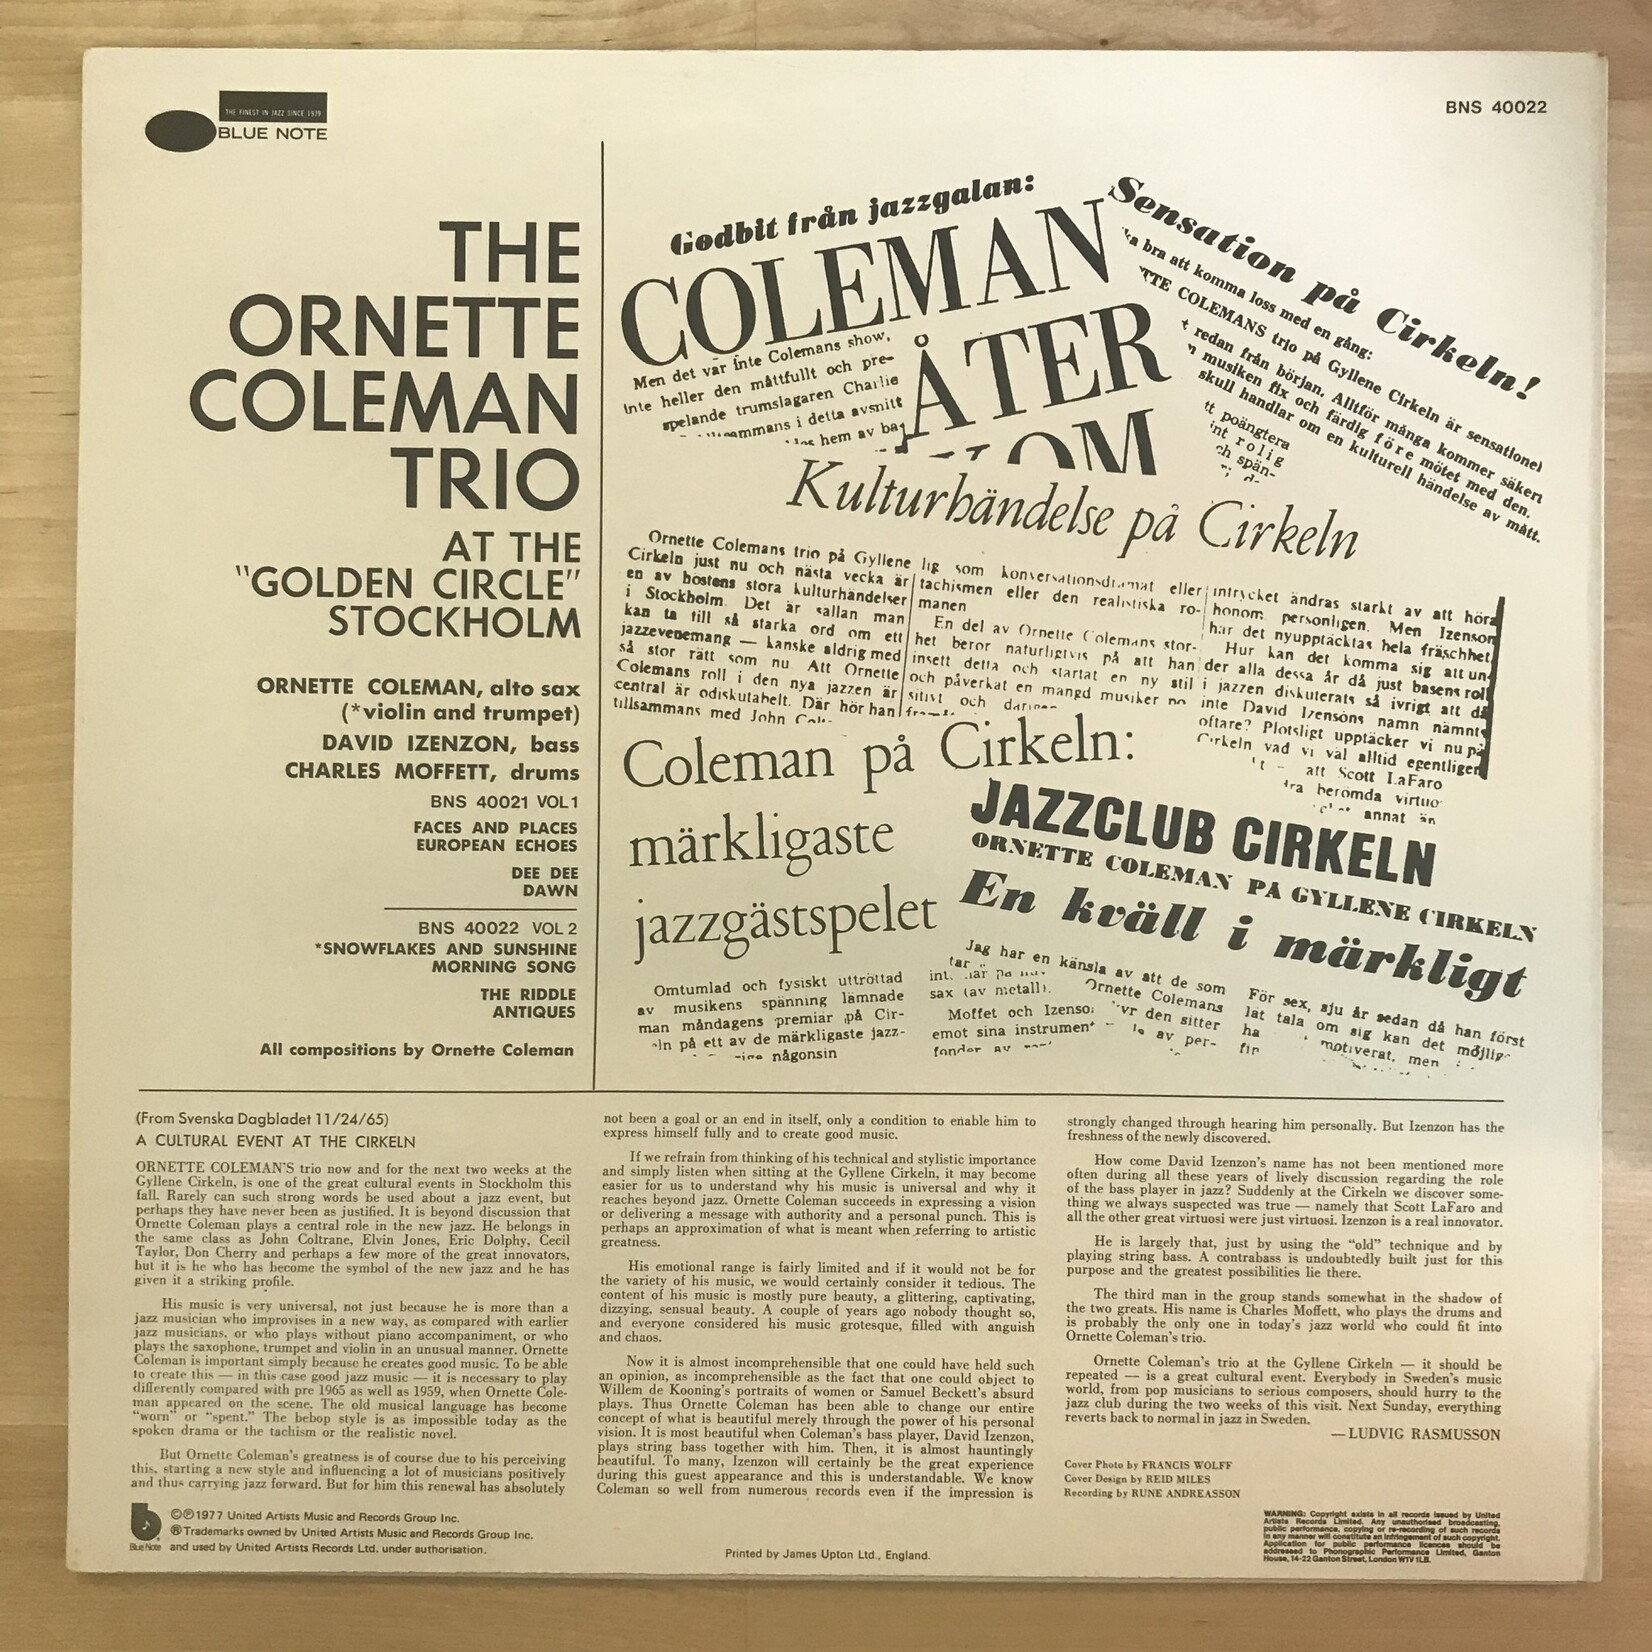 Ornette Coleman - At The Golden Circle Stockholm Volume 2 - BNS 40022 - Vinyl LP (USED - UK)